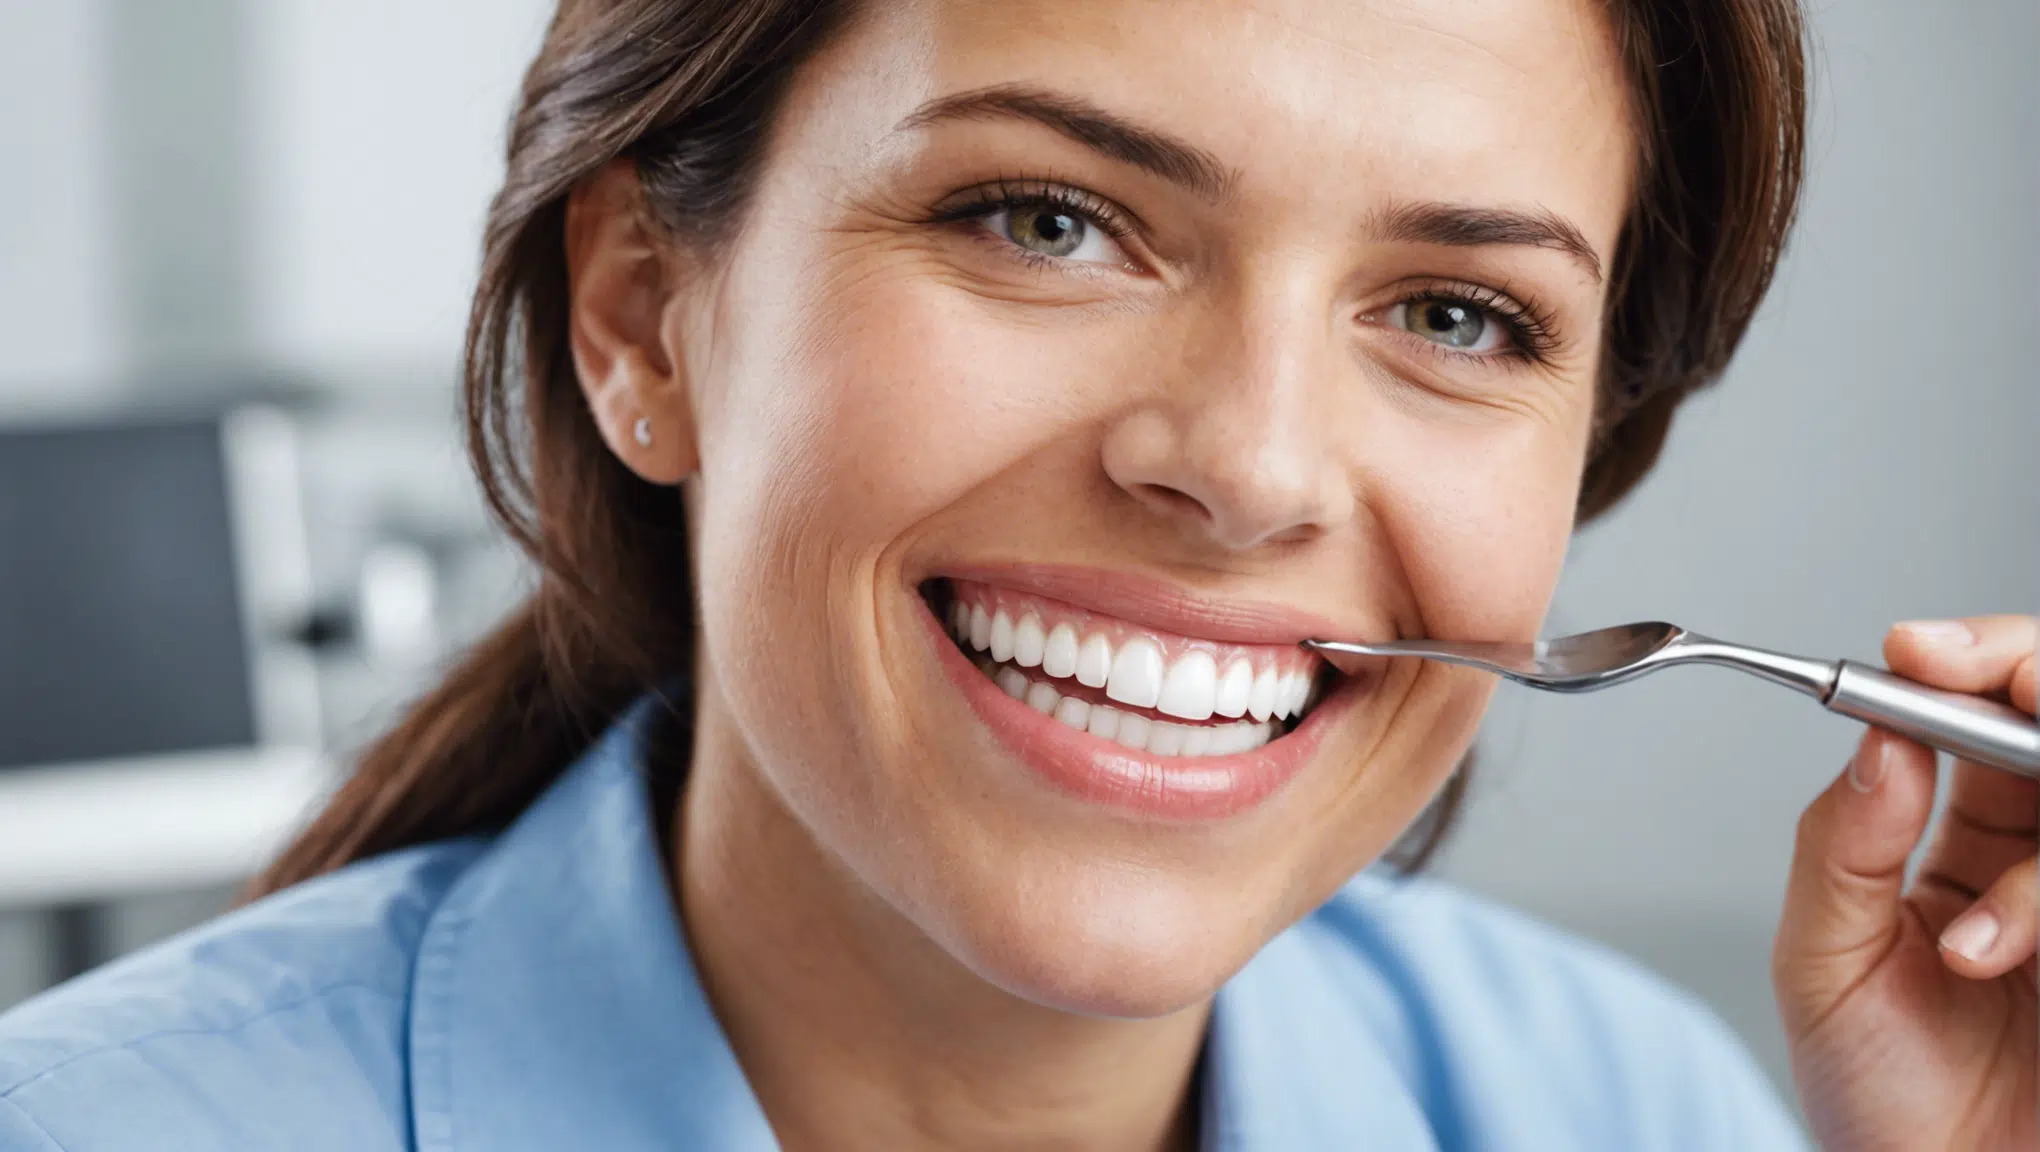 découvrez nos conseils et astuces pour prendre soin de votre santé bucco-dentaire et préserver votre sourire grâce à une hygiène buccale optimale.